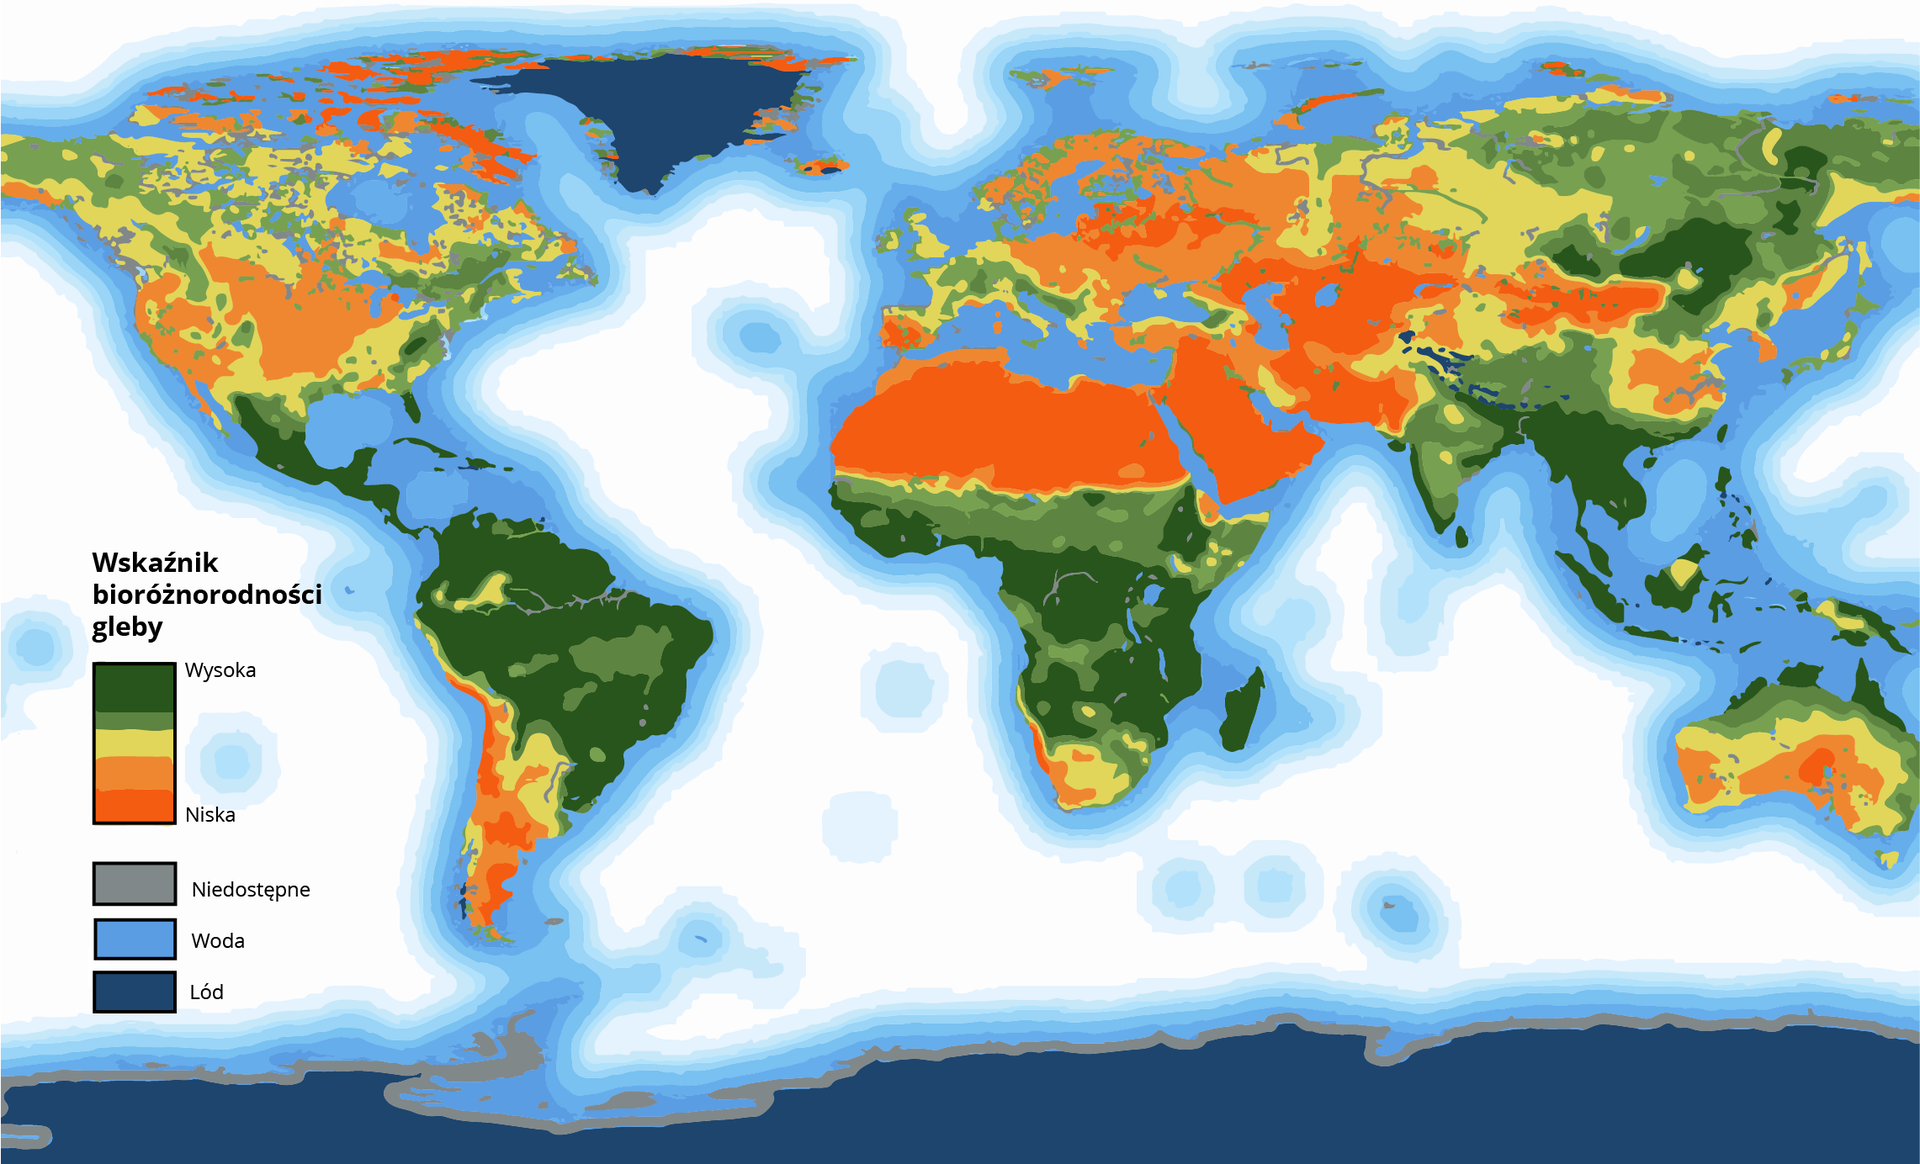 Na mapie świata zaznaczono różnorodność biologiczną gleb. Wysoki wskaźnik bioróżnorodności jest w glebach Ameryki Łacińskiej, na południu Florydy w USA, całej północnej i środkowej części Ameryki Południowej, w centralnej części Afryki i obszarach rozciągających się na południe kontynentu, na Madagaskarze, na Półwyspie Indochińskim, w północno-wschodniej oraz południowo-zachodniej części Indii, w Indonezji, na północnych krańcach Australii, na wschód od Bajkału. Gleby o niskiej bioróżnorodności występują między innymi na południu i południowym zachodzie Ameryki Południowej, na północy Afryki, na całym Półwyspie Arabskim, na wschód od Morza Kaspijskiego, w rejonie Iranu, Afganistanu, Pakistanu. Niska bioróżnorodność dotyczy także północnych krańców Ameryki Północnej. Na obszarze Polski bioróżnorodność także jest stosunkowo niska, podobnie jak krajów europejskich na południe od Polski oraz na wschód.          